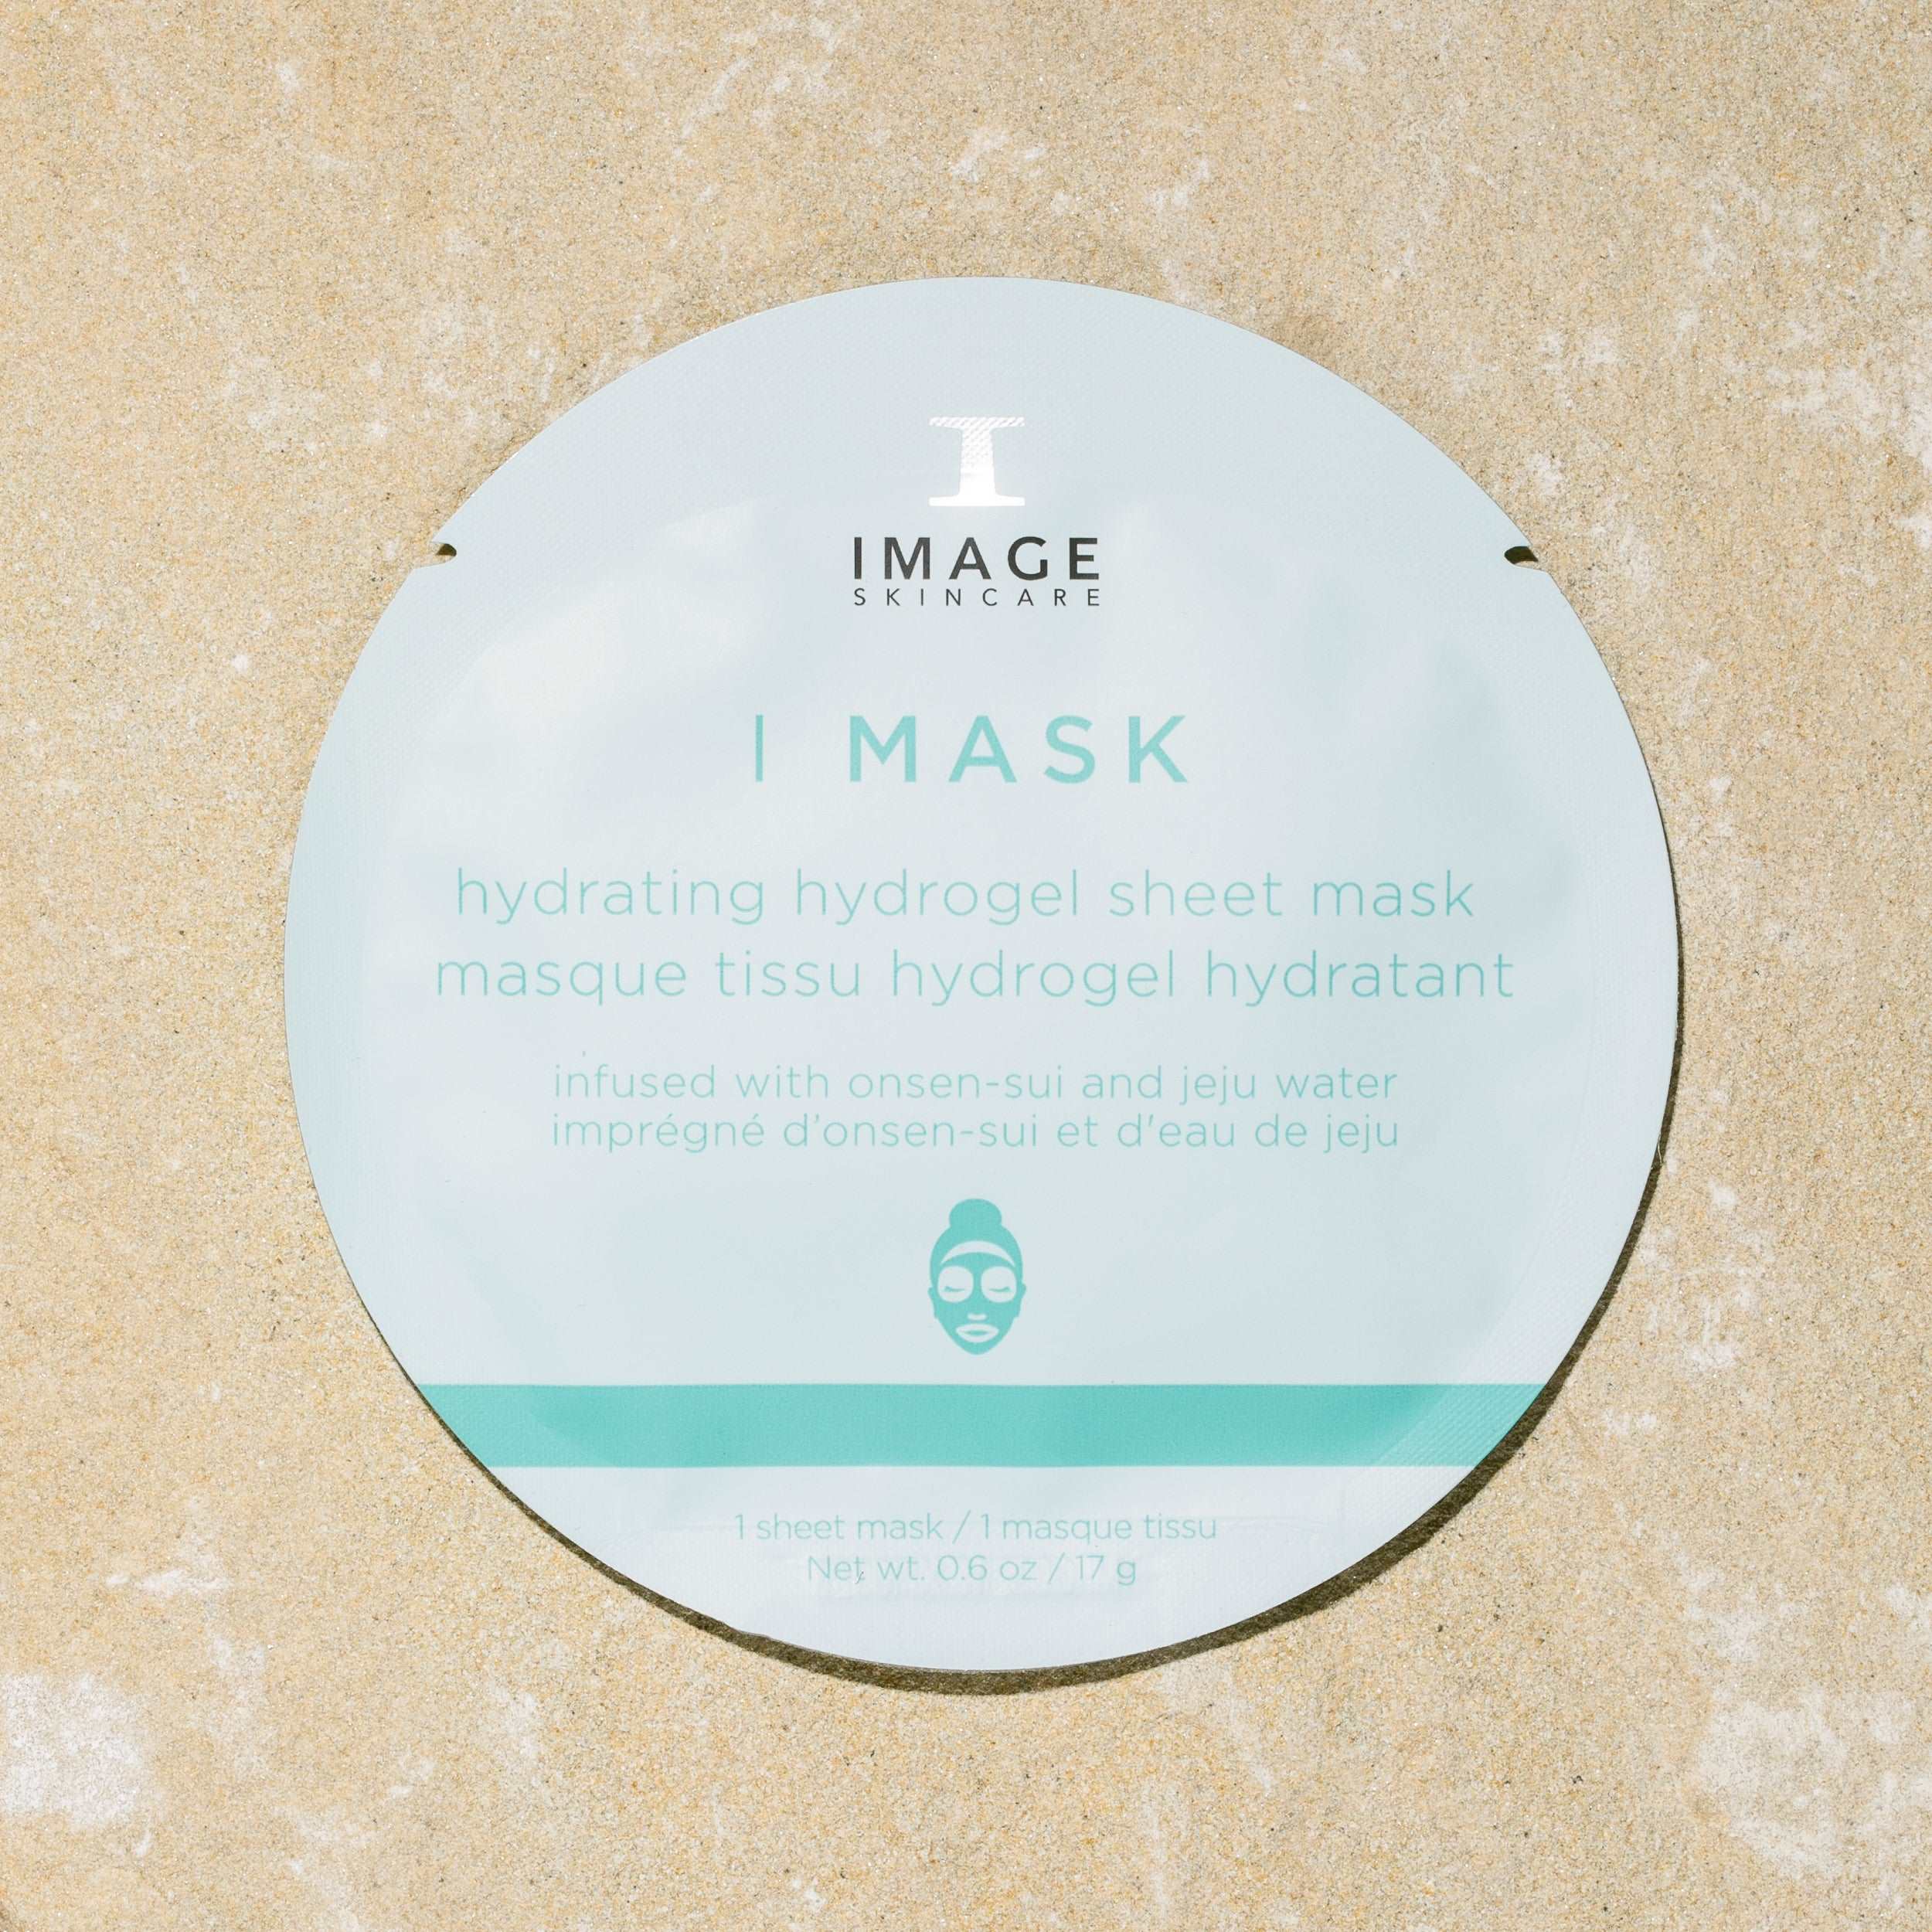 I MASK Hydrating Hydrogel Sheet Mask Single Mask Image Skincare